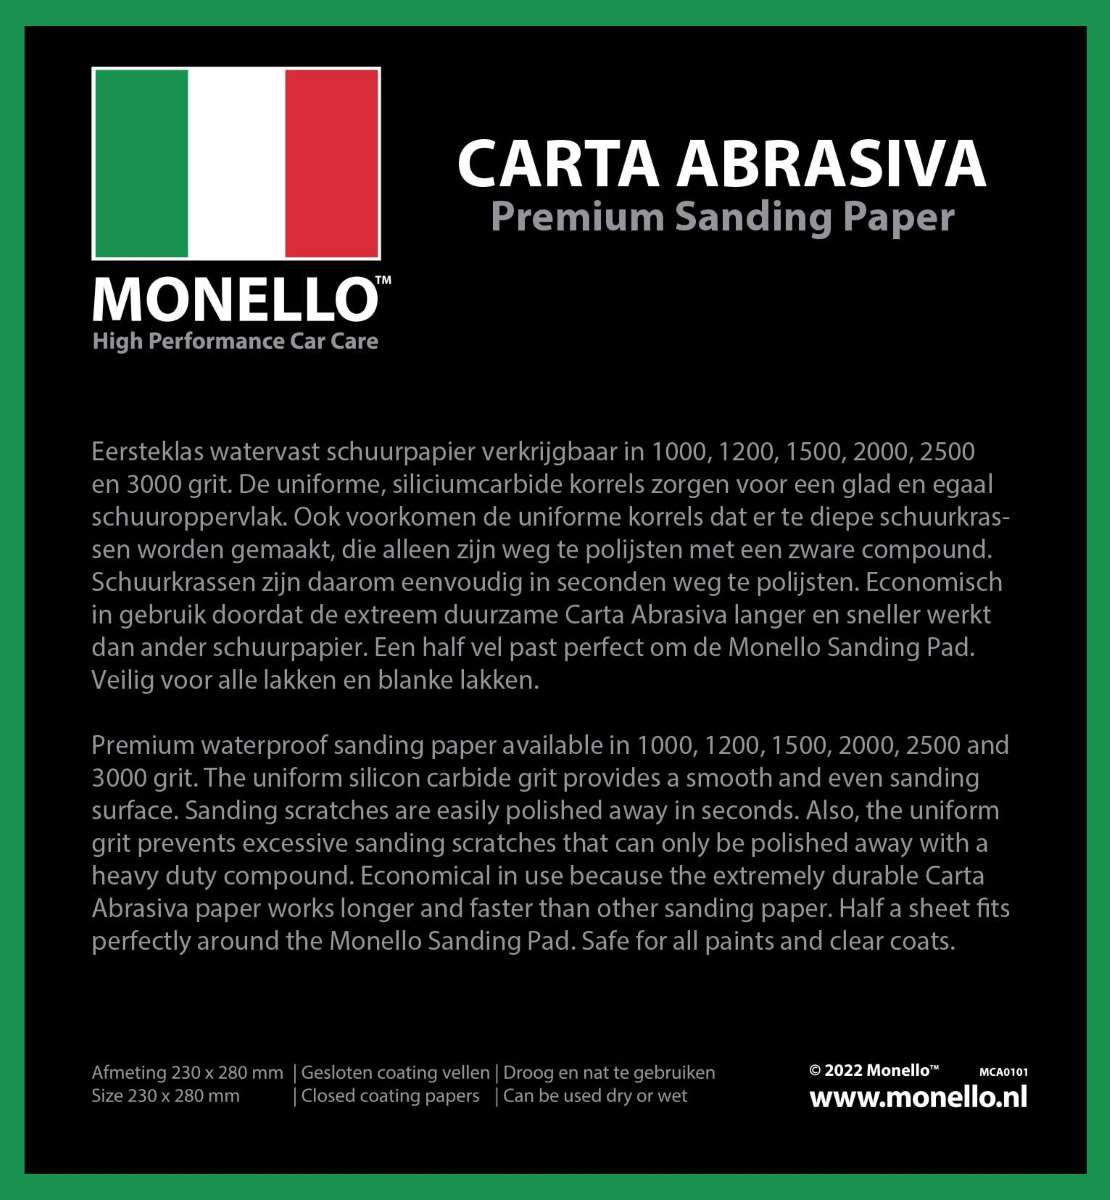 Monello_CARTA-ABRASIVA_1110.jpg